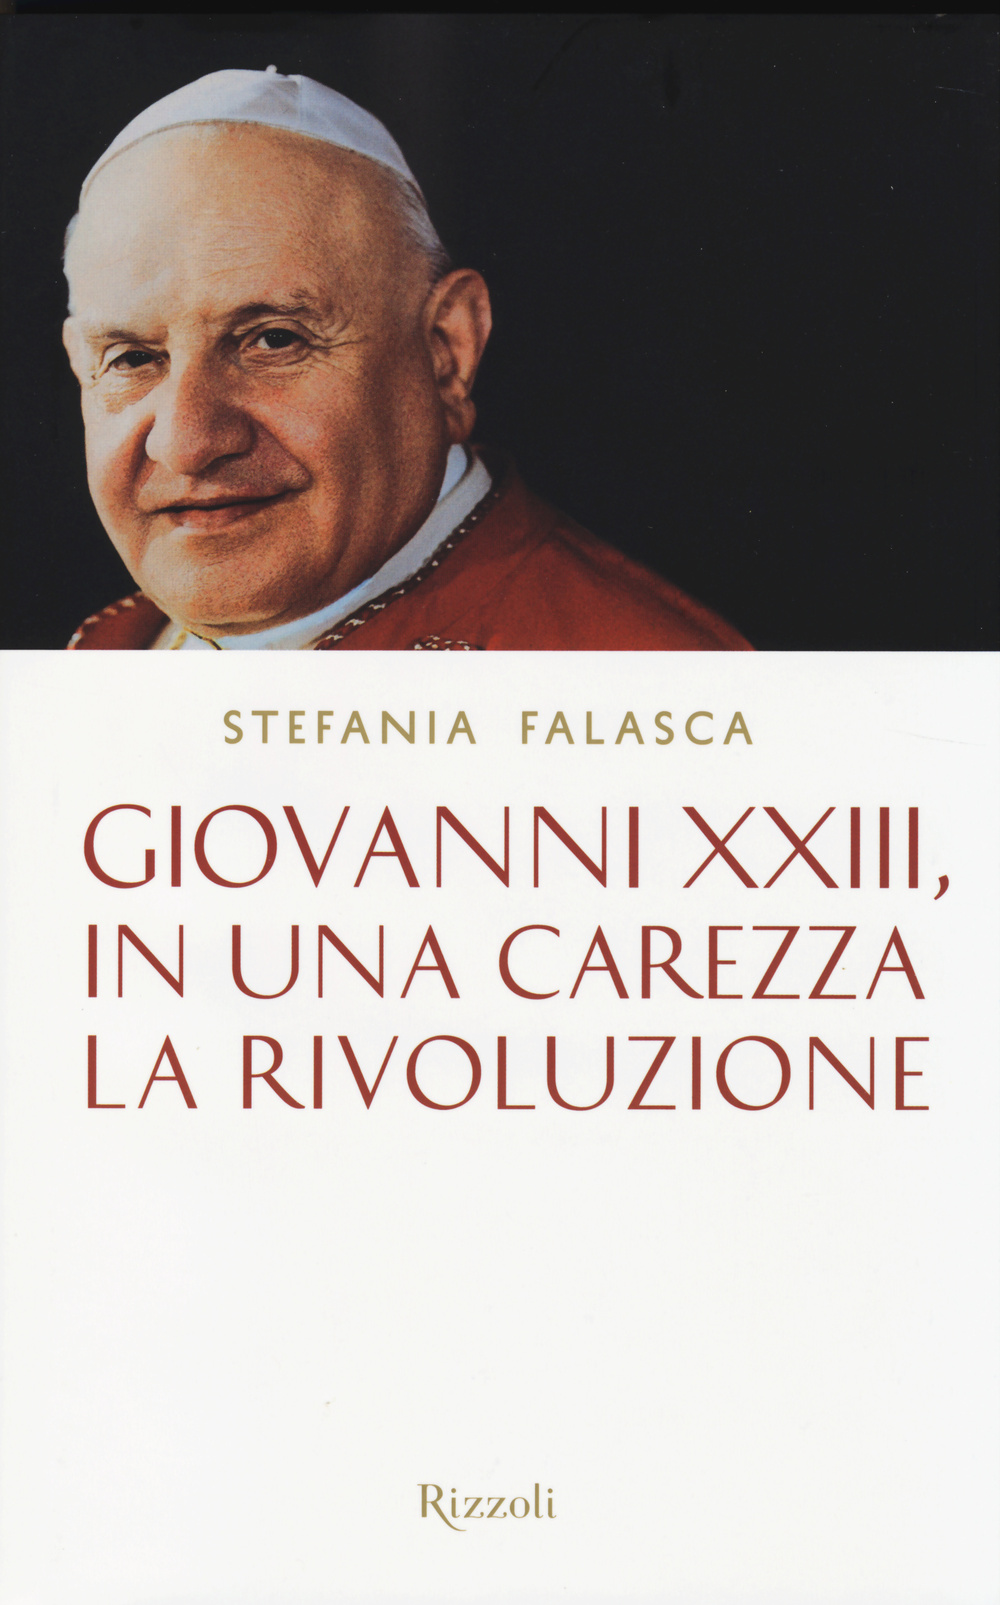 Giovanni XXIII, in una carezza la rivoluzione